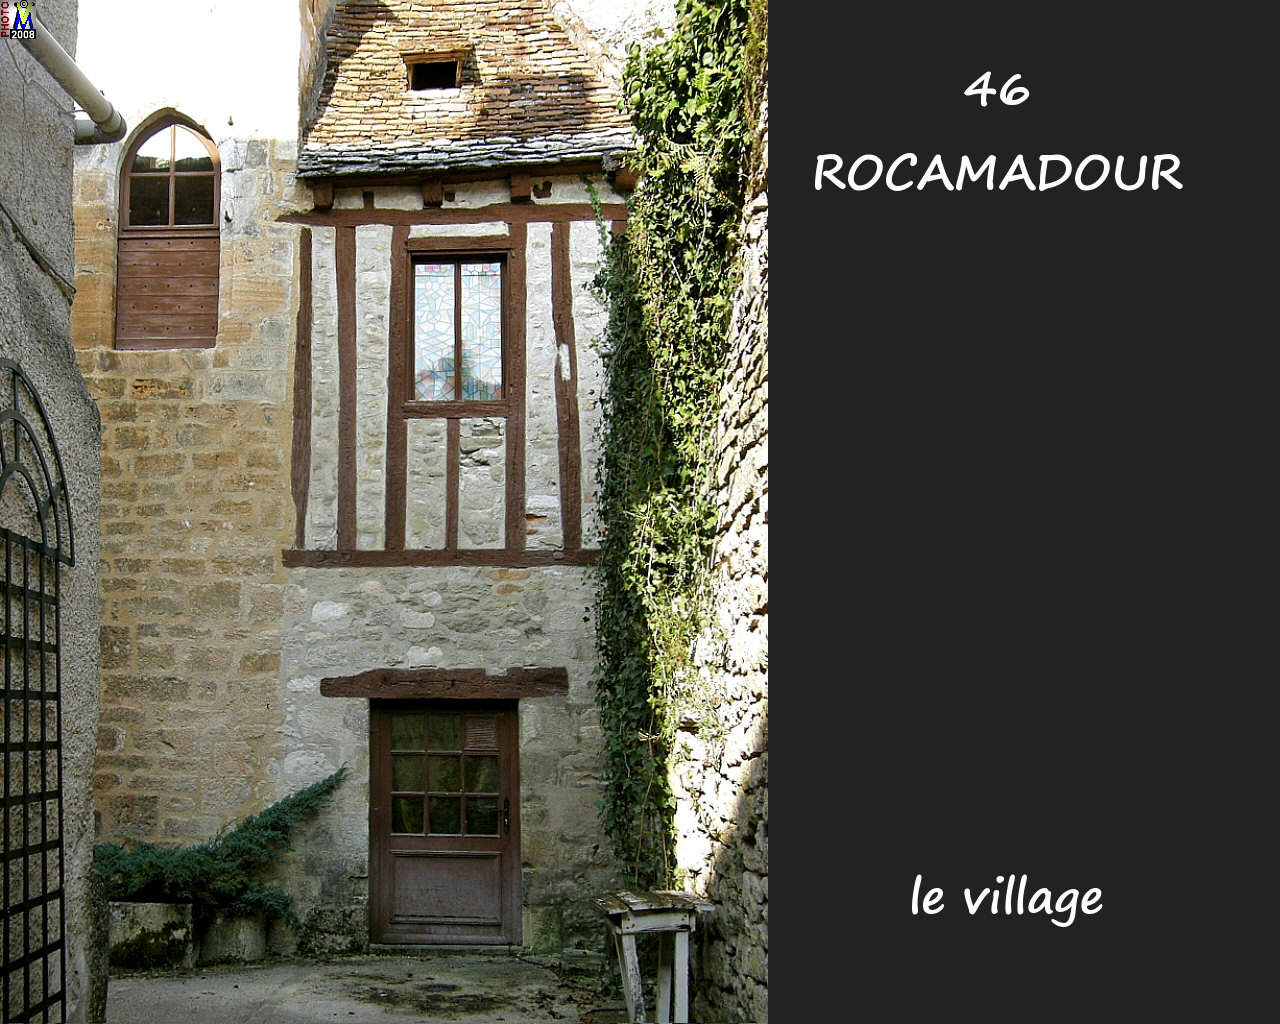 46ROCAMADOUR_village_150.jpg